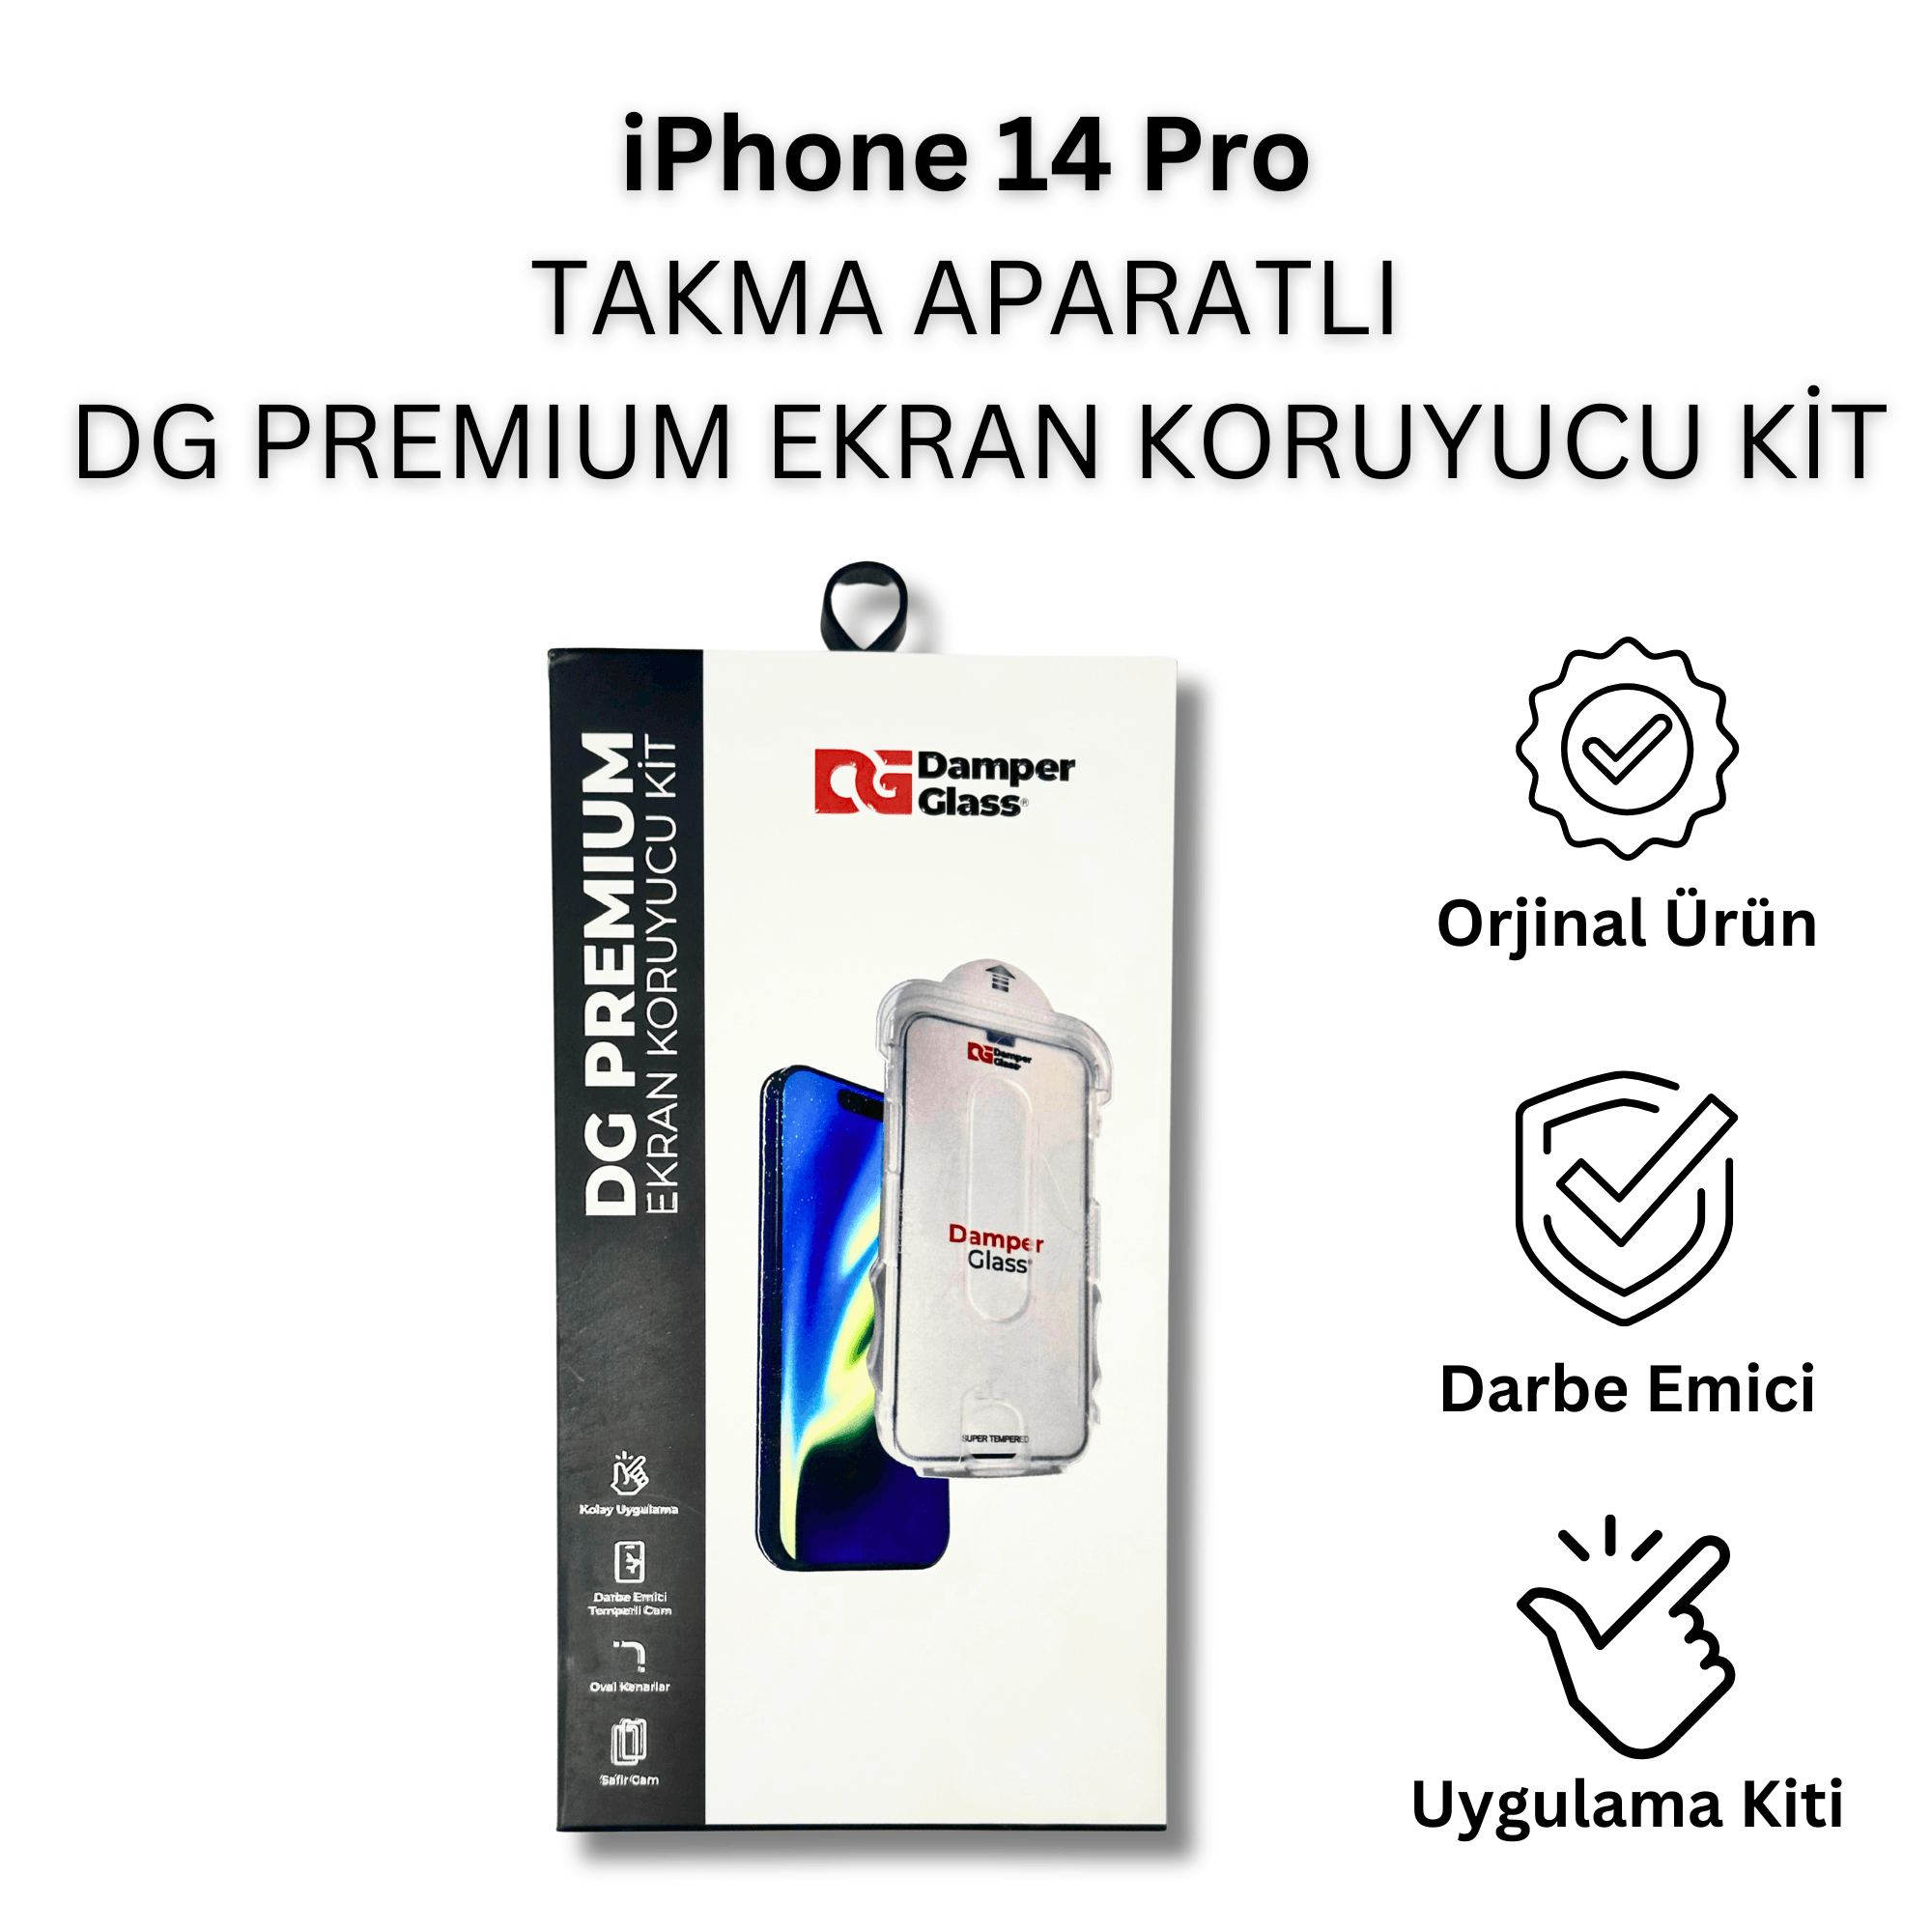 iPhone 14 Pro DG Premium Takma Aparatlı Darbe Emici Ekran Koruyucu Kit